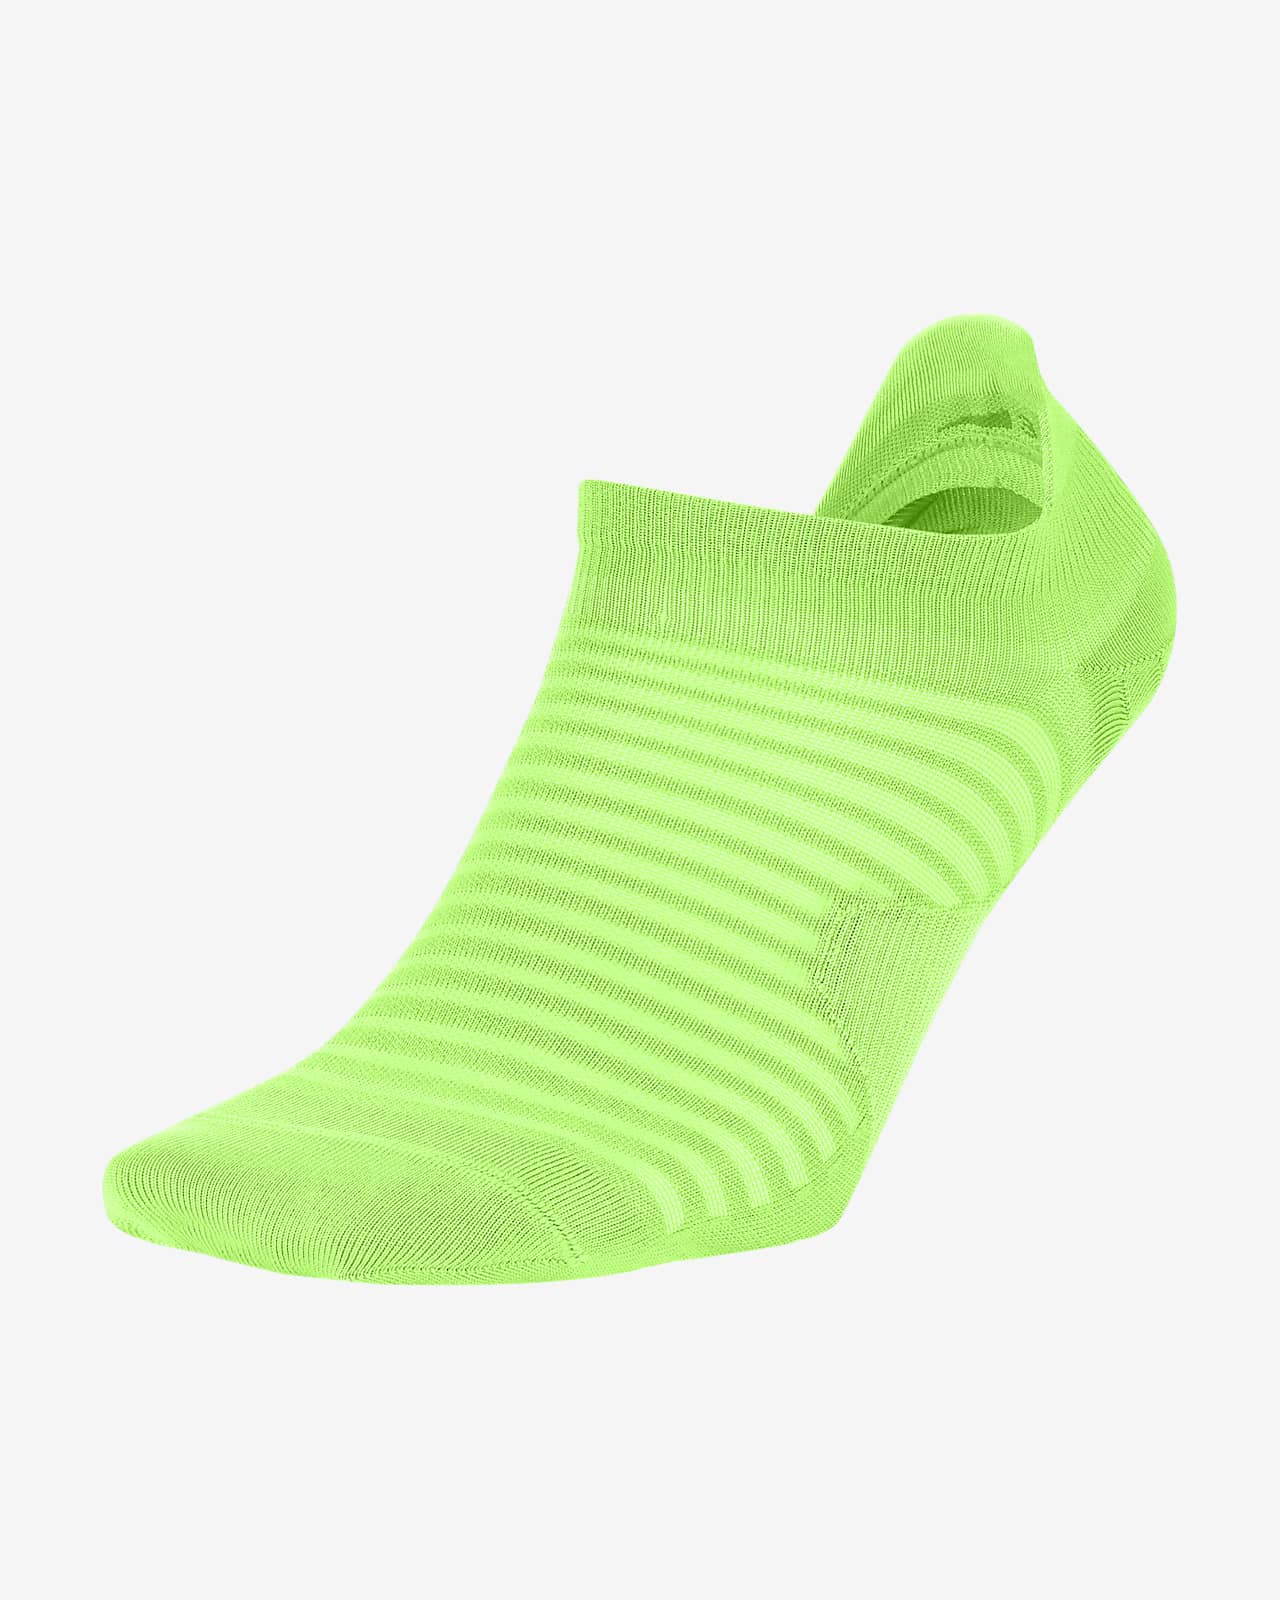 lime green jordan socks